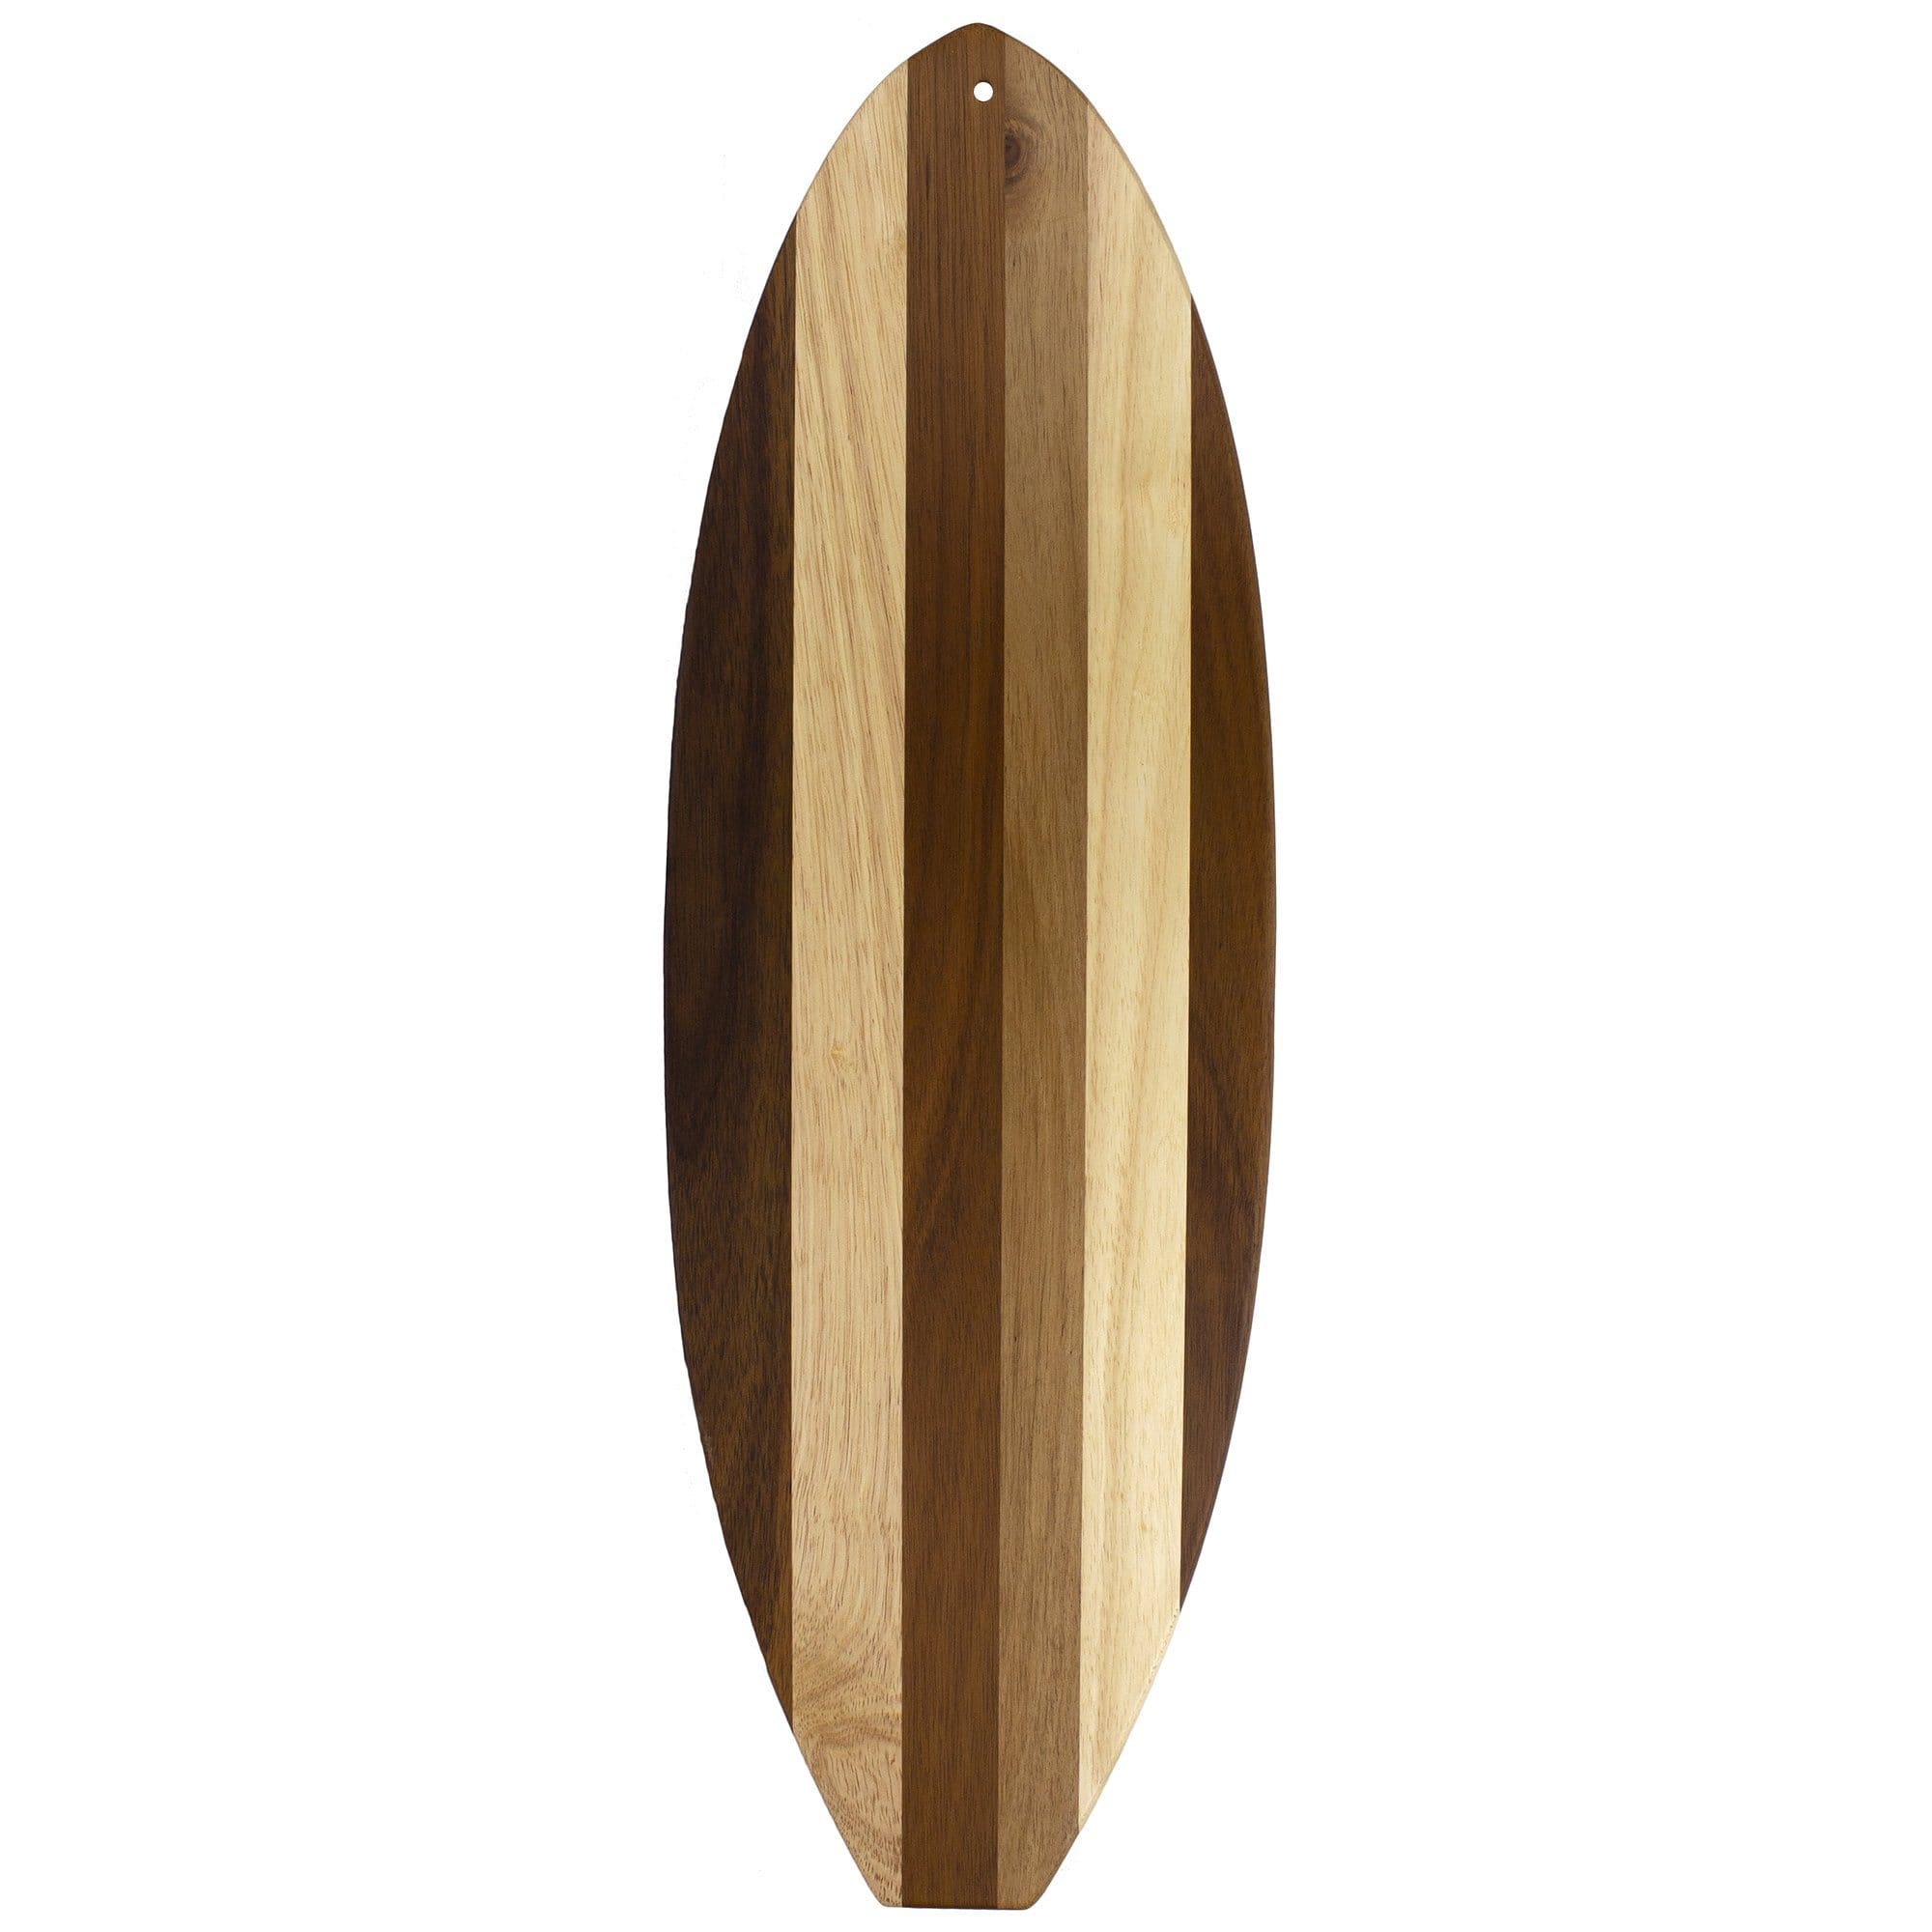 Didaey 6 Pcs Bamboo Surfboard Cutting Board Surf Board Shaped Wood Serving  and Cutting Board Surfboard Decoration Bar Cutting Board Set with Stylish